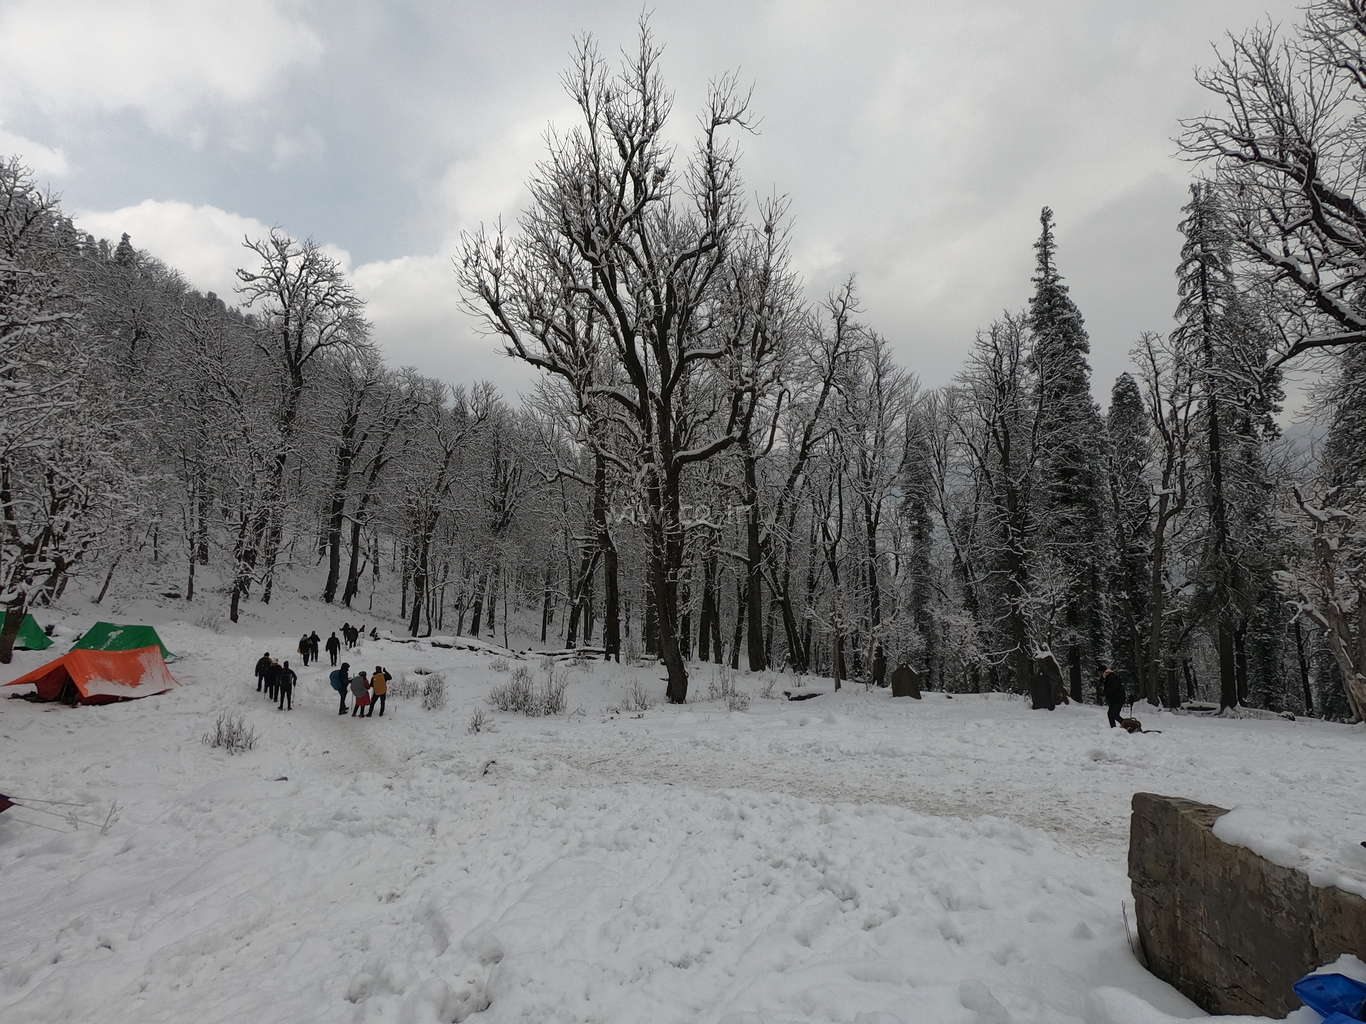 Kedarkantha trek full of snow in the month of December christmas